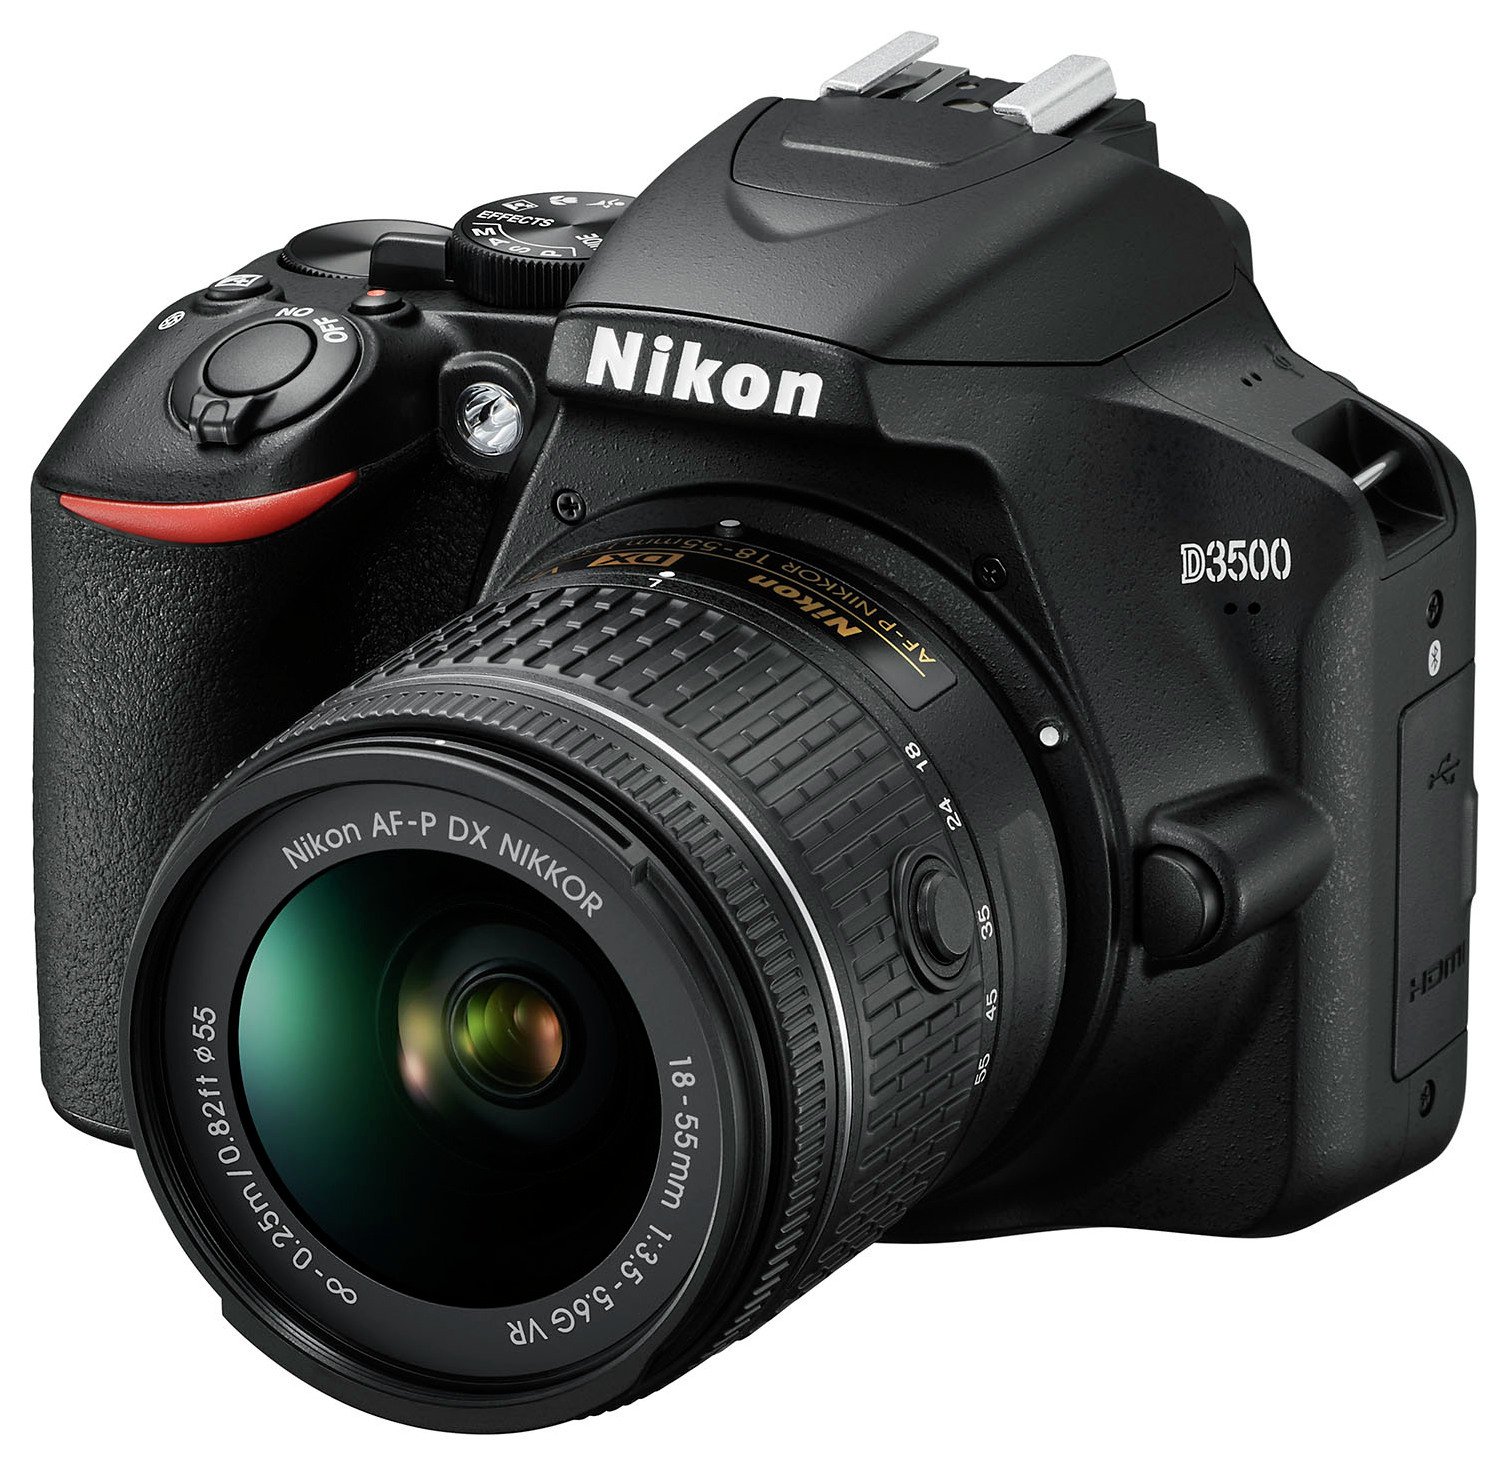 Nikon D3500 DSLR Camera with AF-P DX 18-55mm VR Lens Review